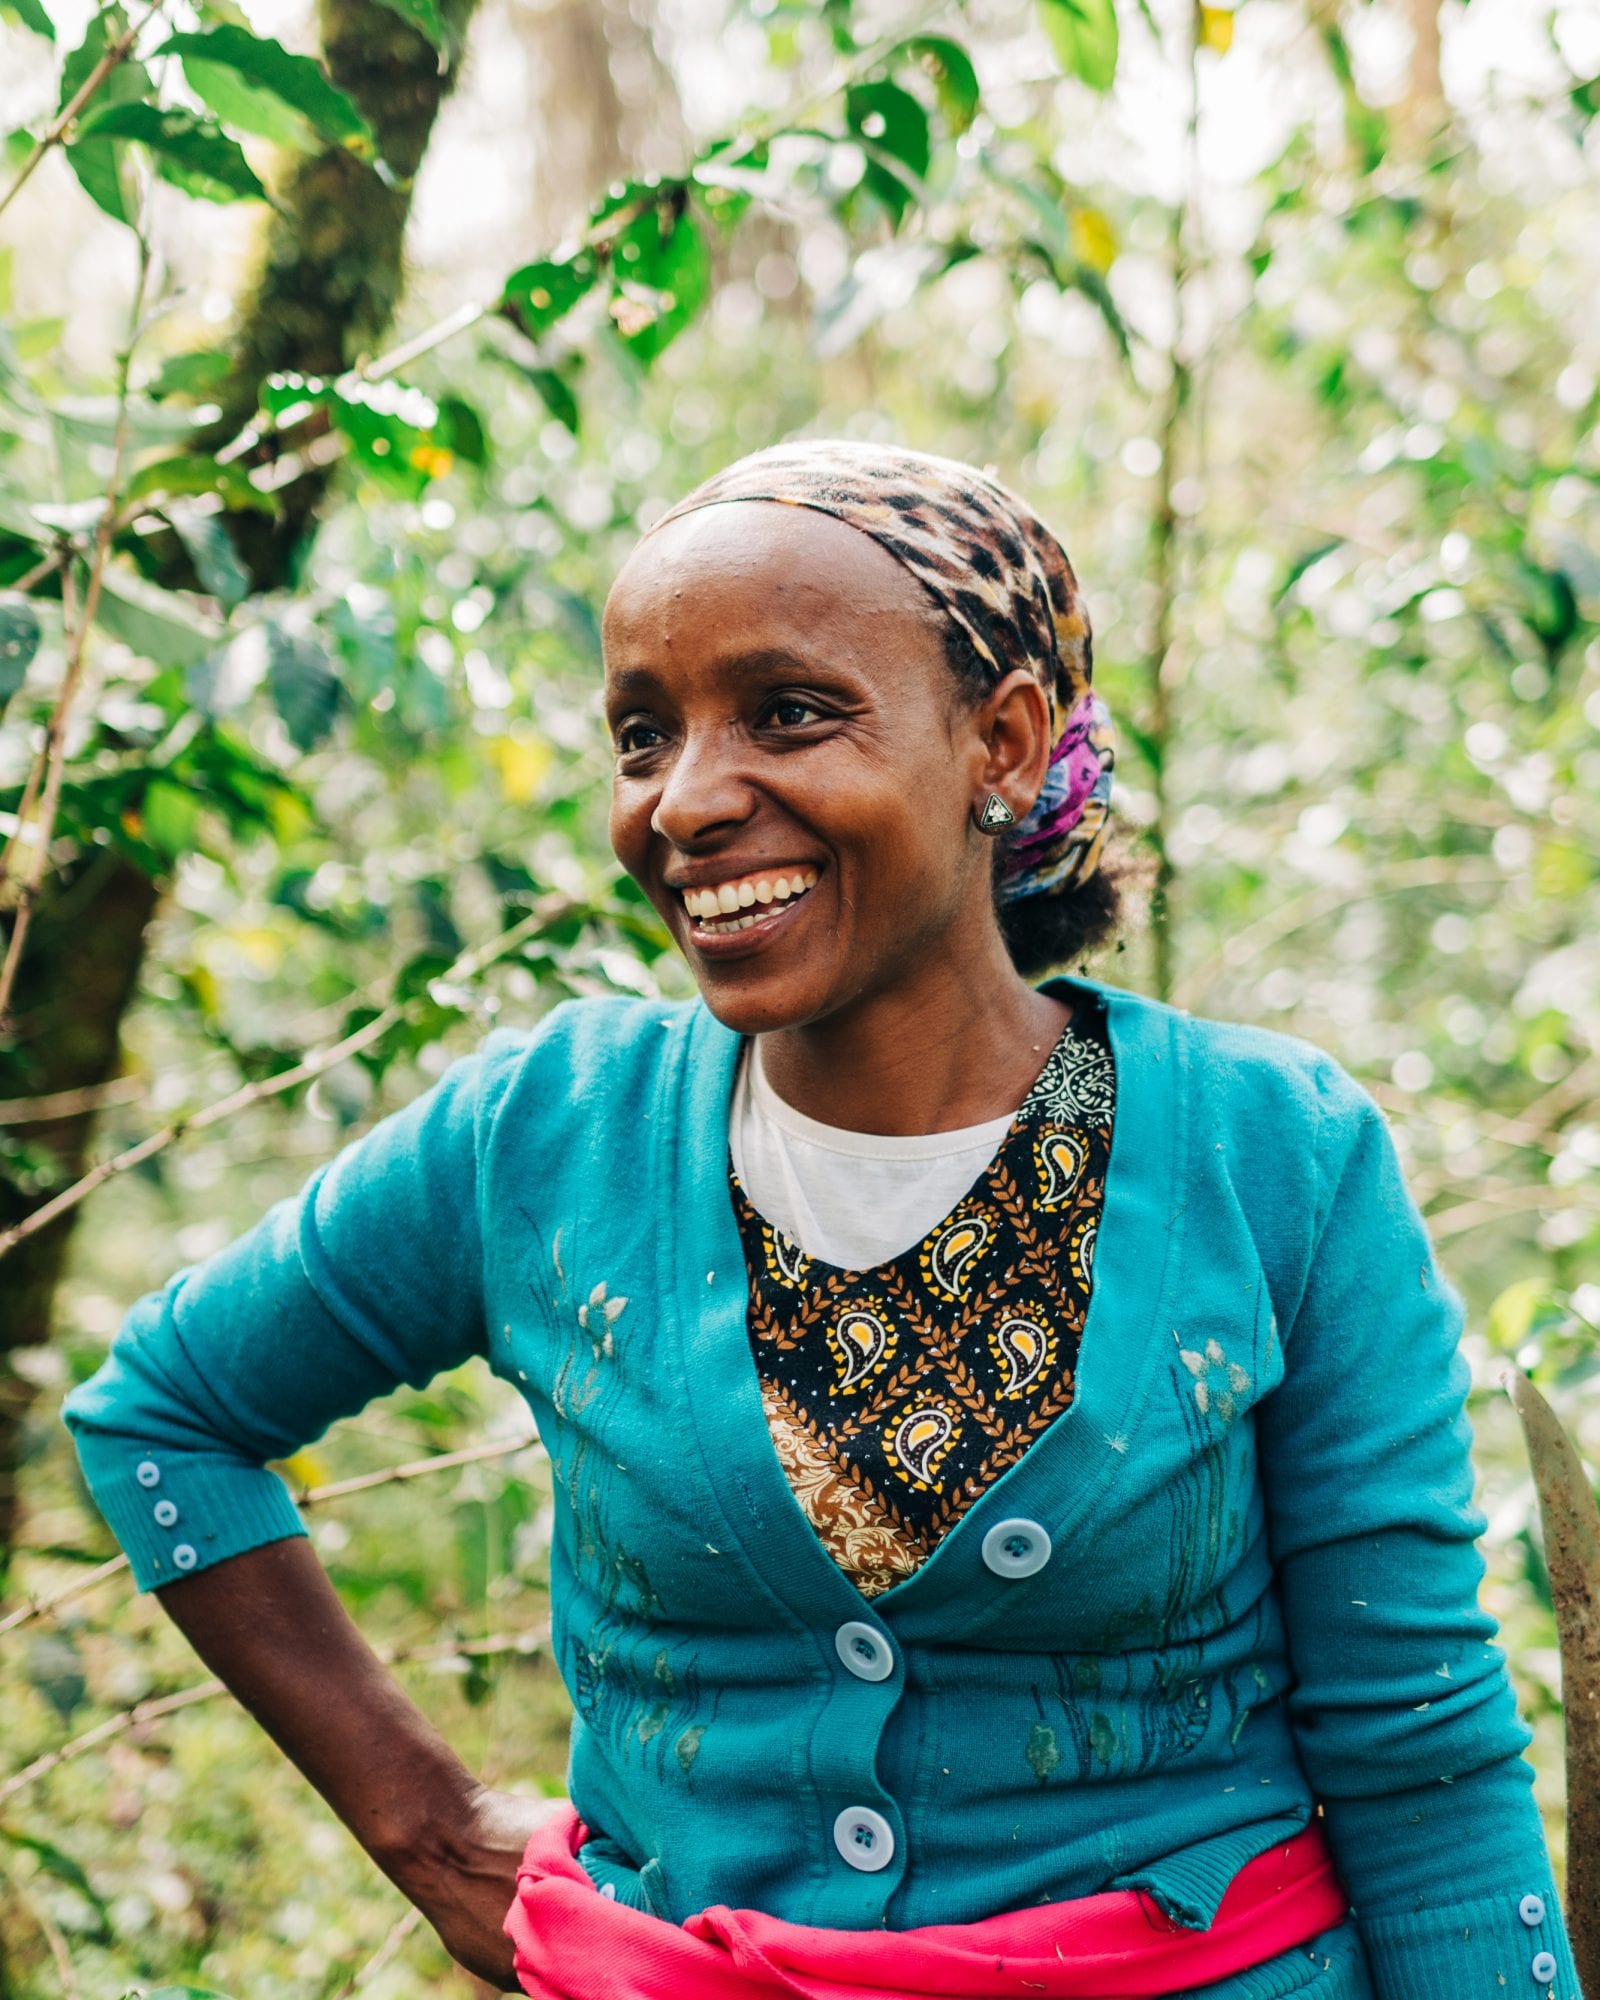 Lubaba is a coffee farmer in western Ethiopia